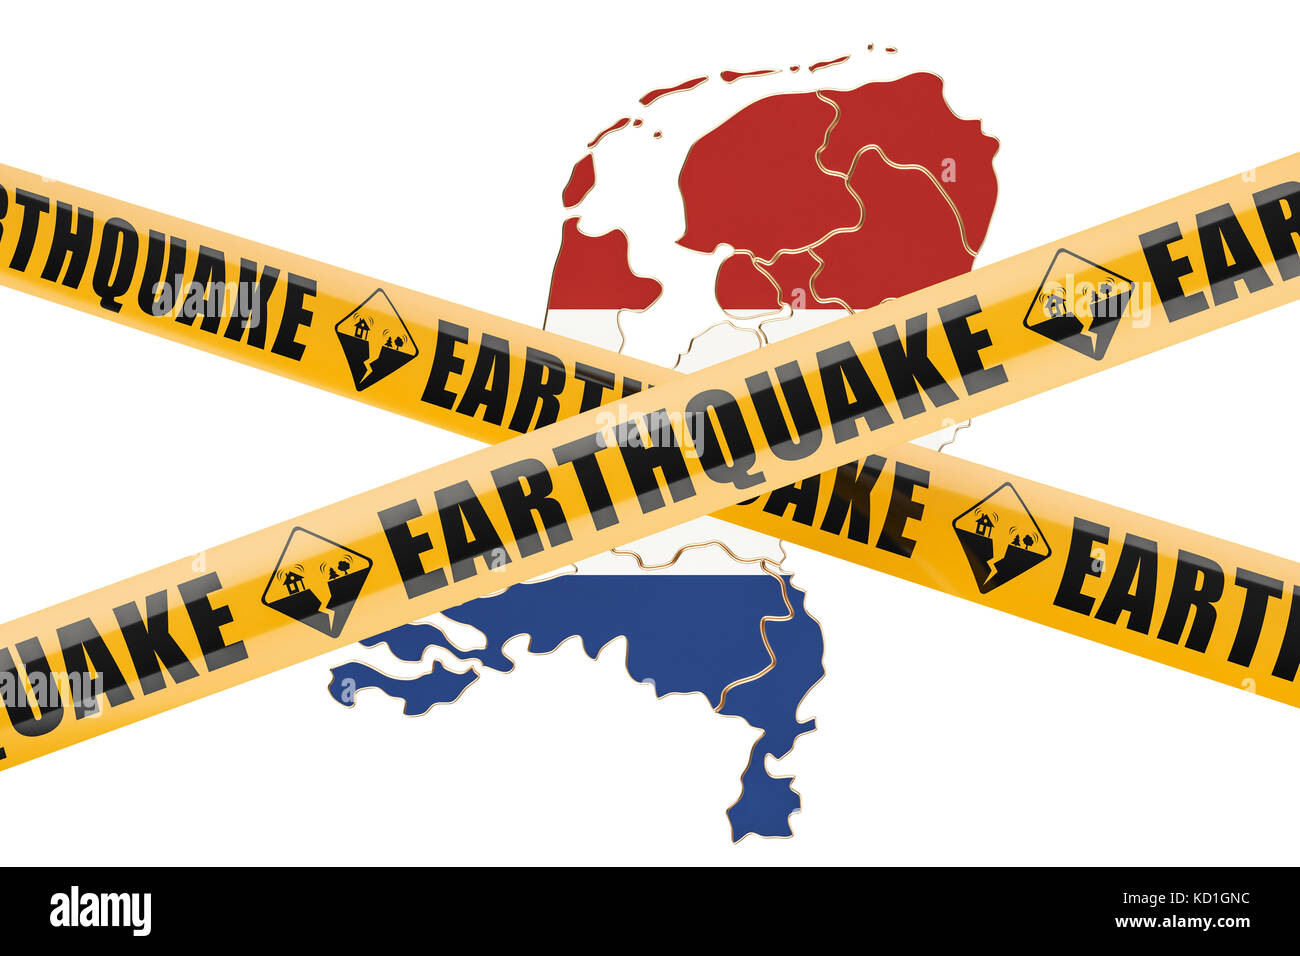 Erdbeben in Niederlande Konzept, 3D-Rendering auf weißem Hintergrund Stockfoto